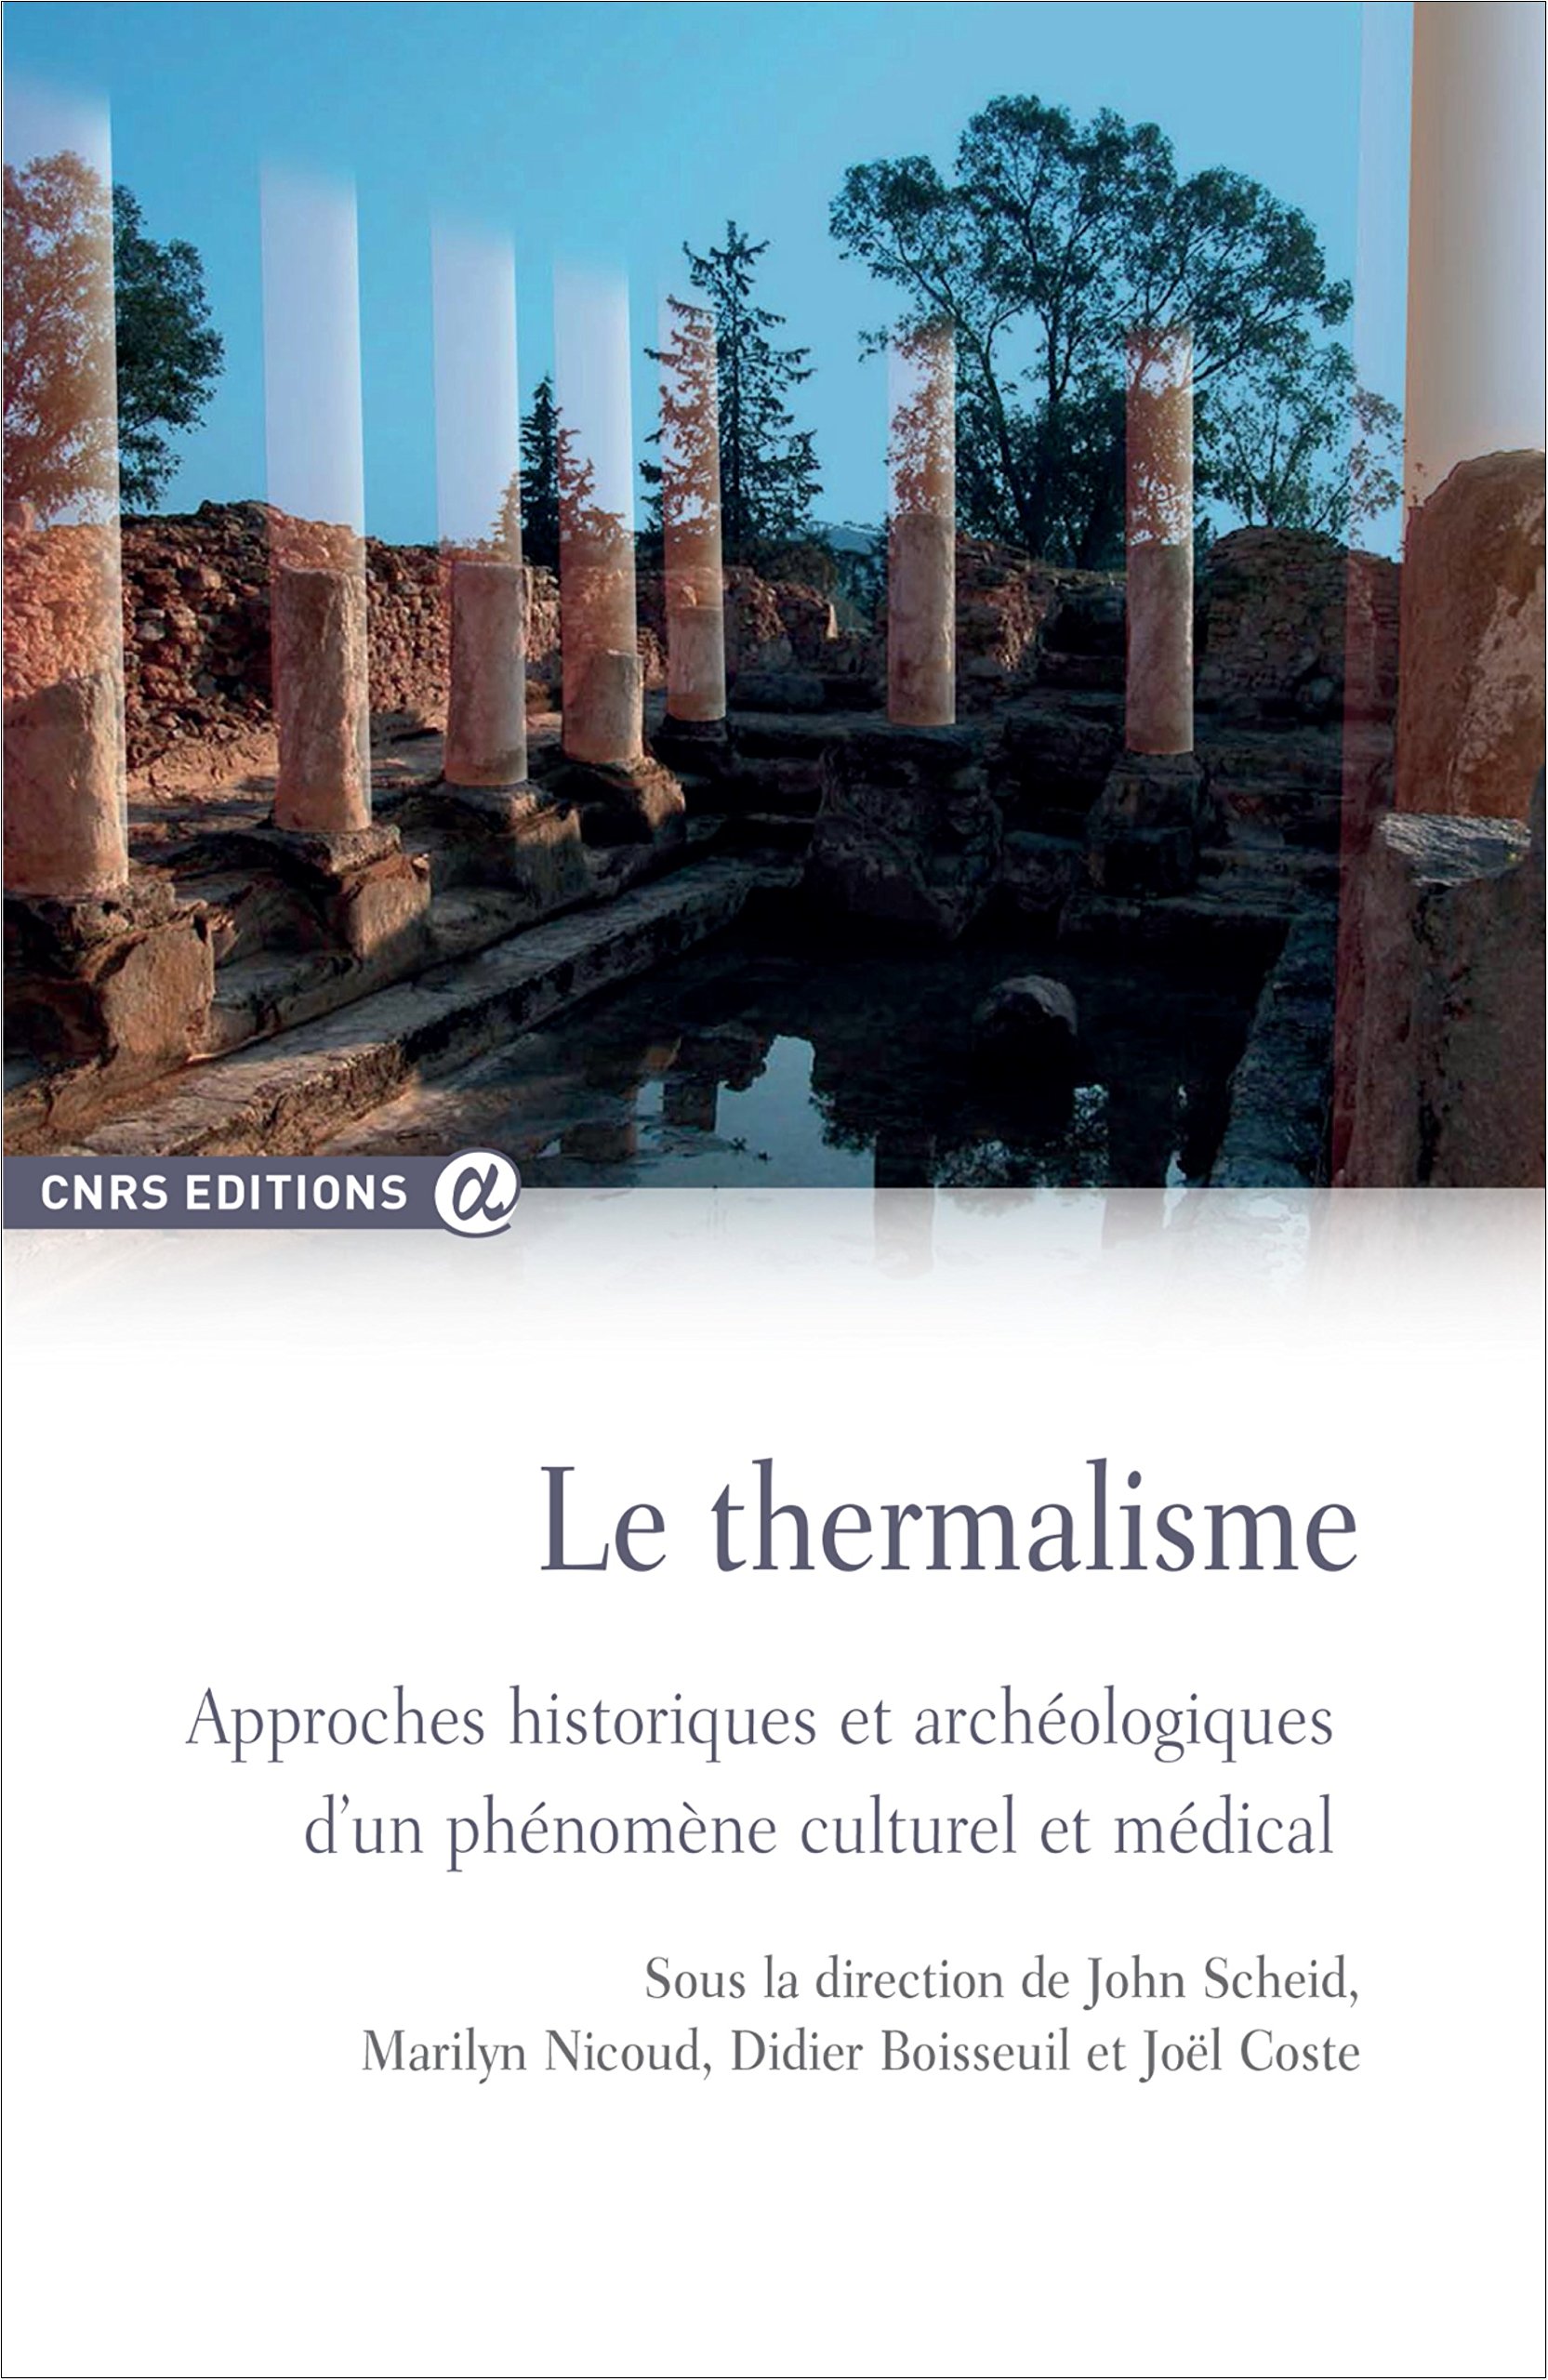 Le thermalisme. Approches historiques et archéologiques d'un phénomène culturel et médical, 2015, 304 p.